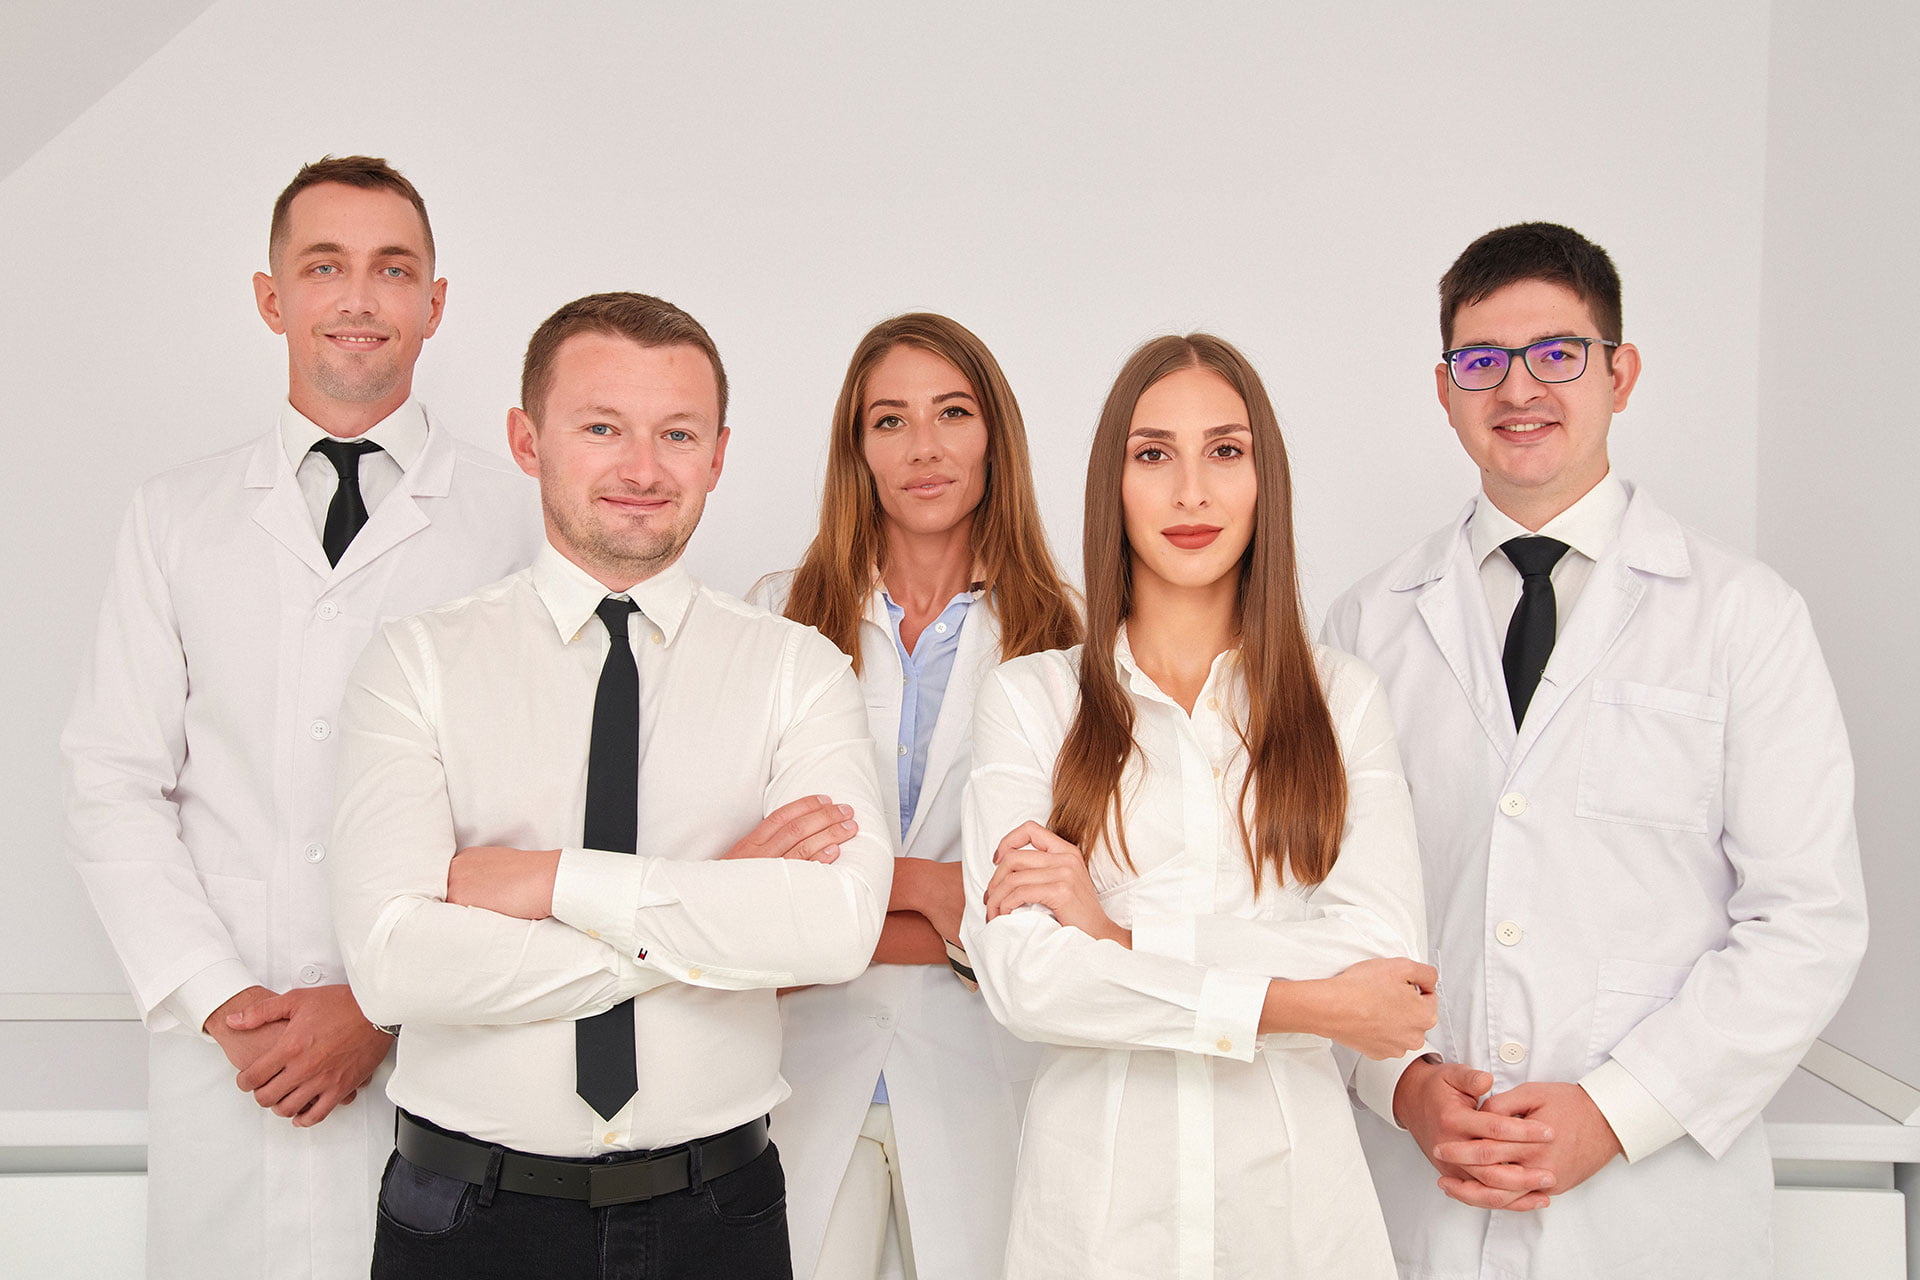 Specializări în medicina dentară și ce înseamnă o echipă multidisciplinară?